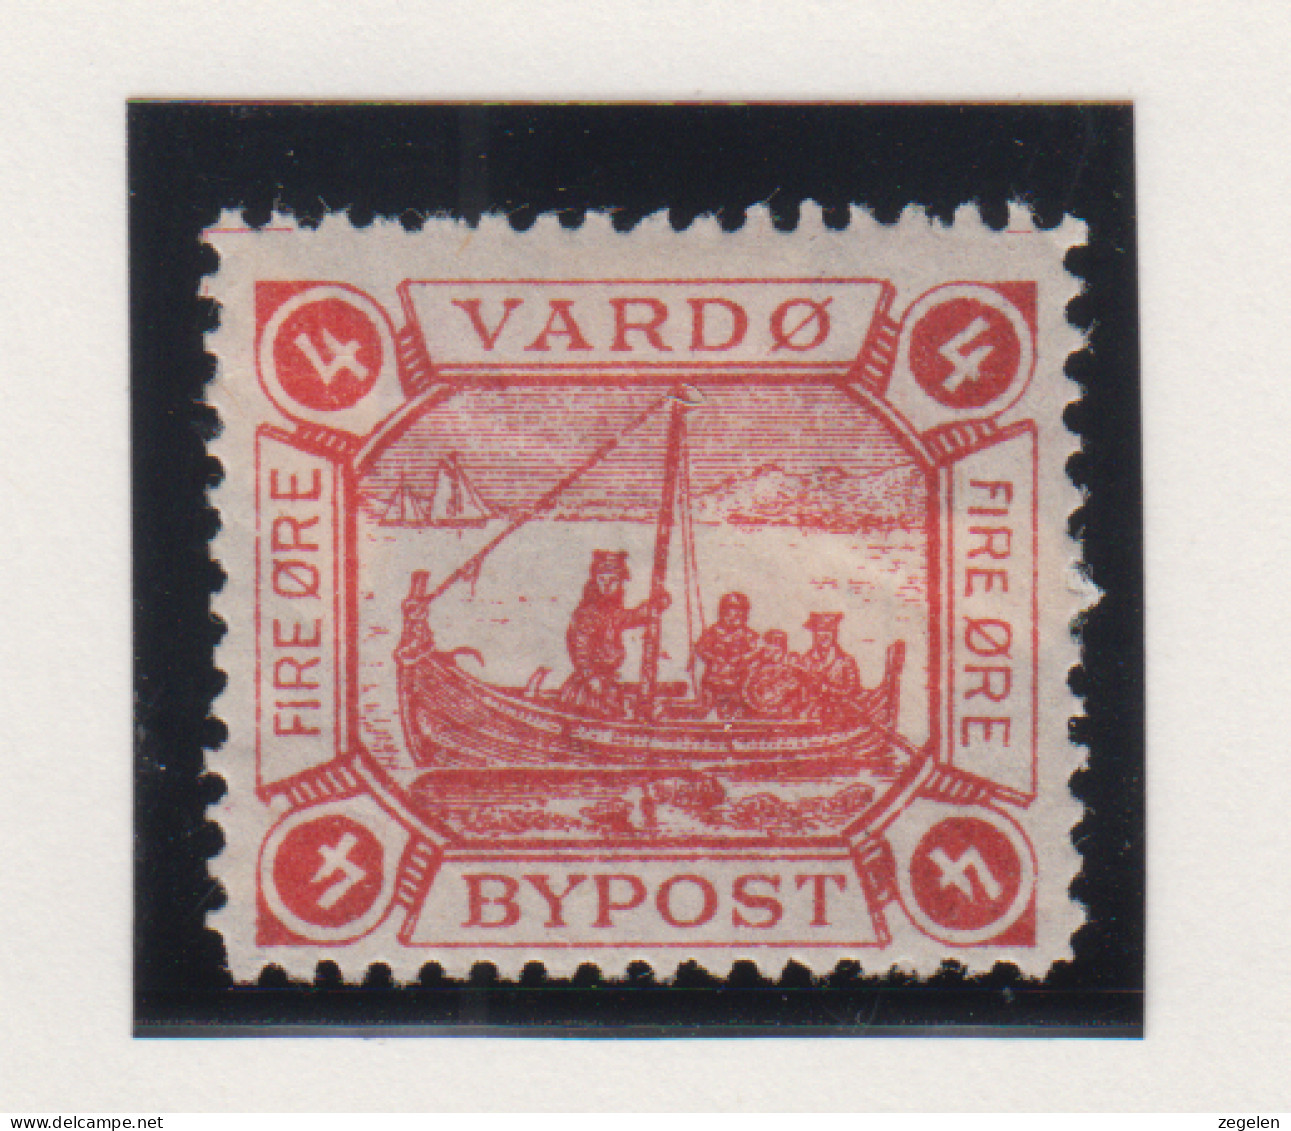 Noorwegen Lokale Zegel   Katalog Over Norges Byposter Vardo Bypost 2 - Local Post Stamps